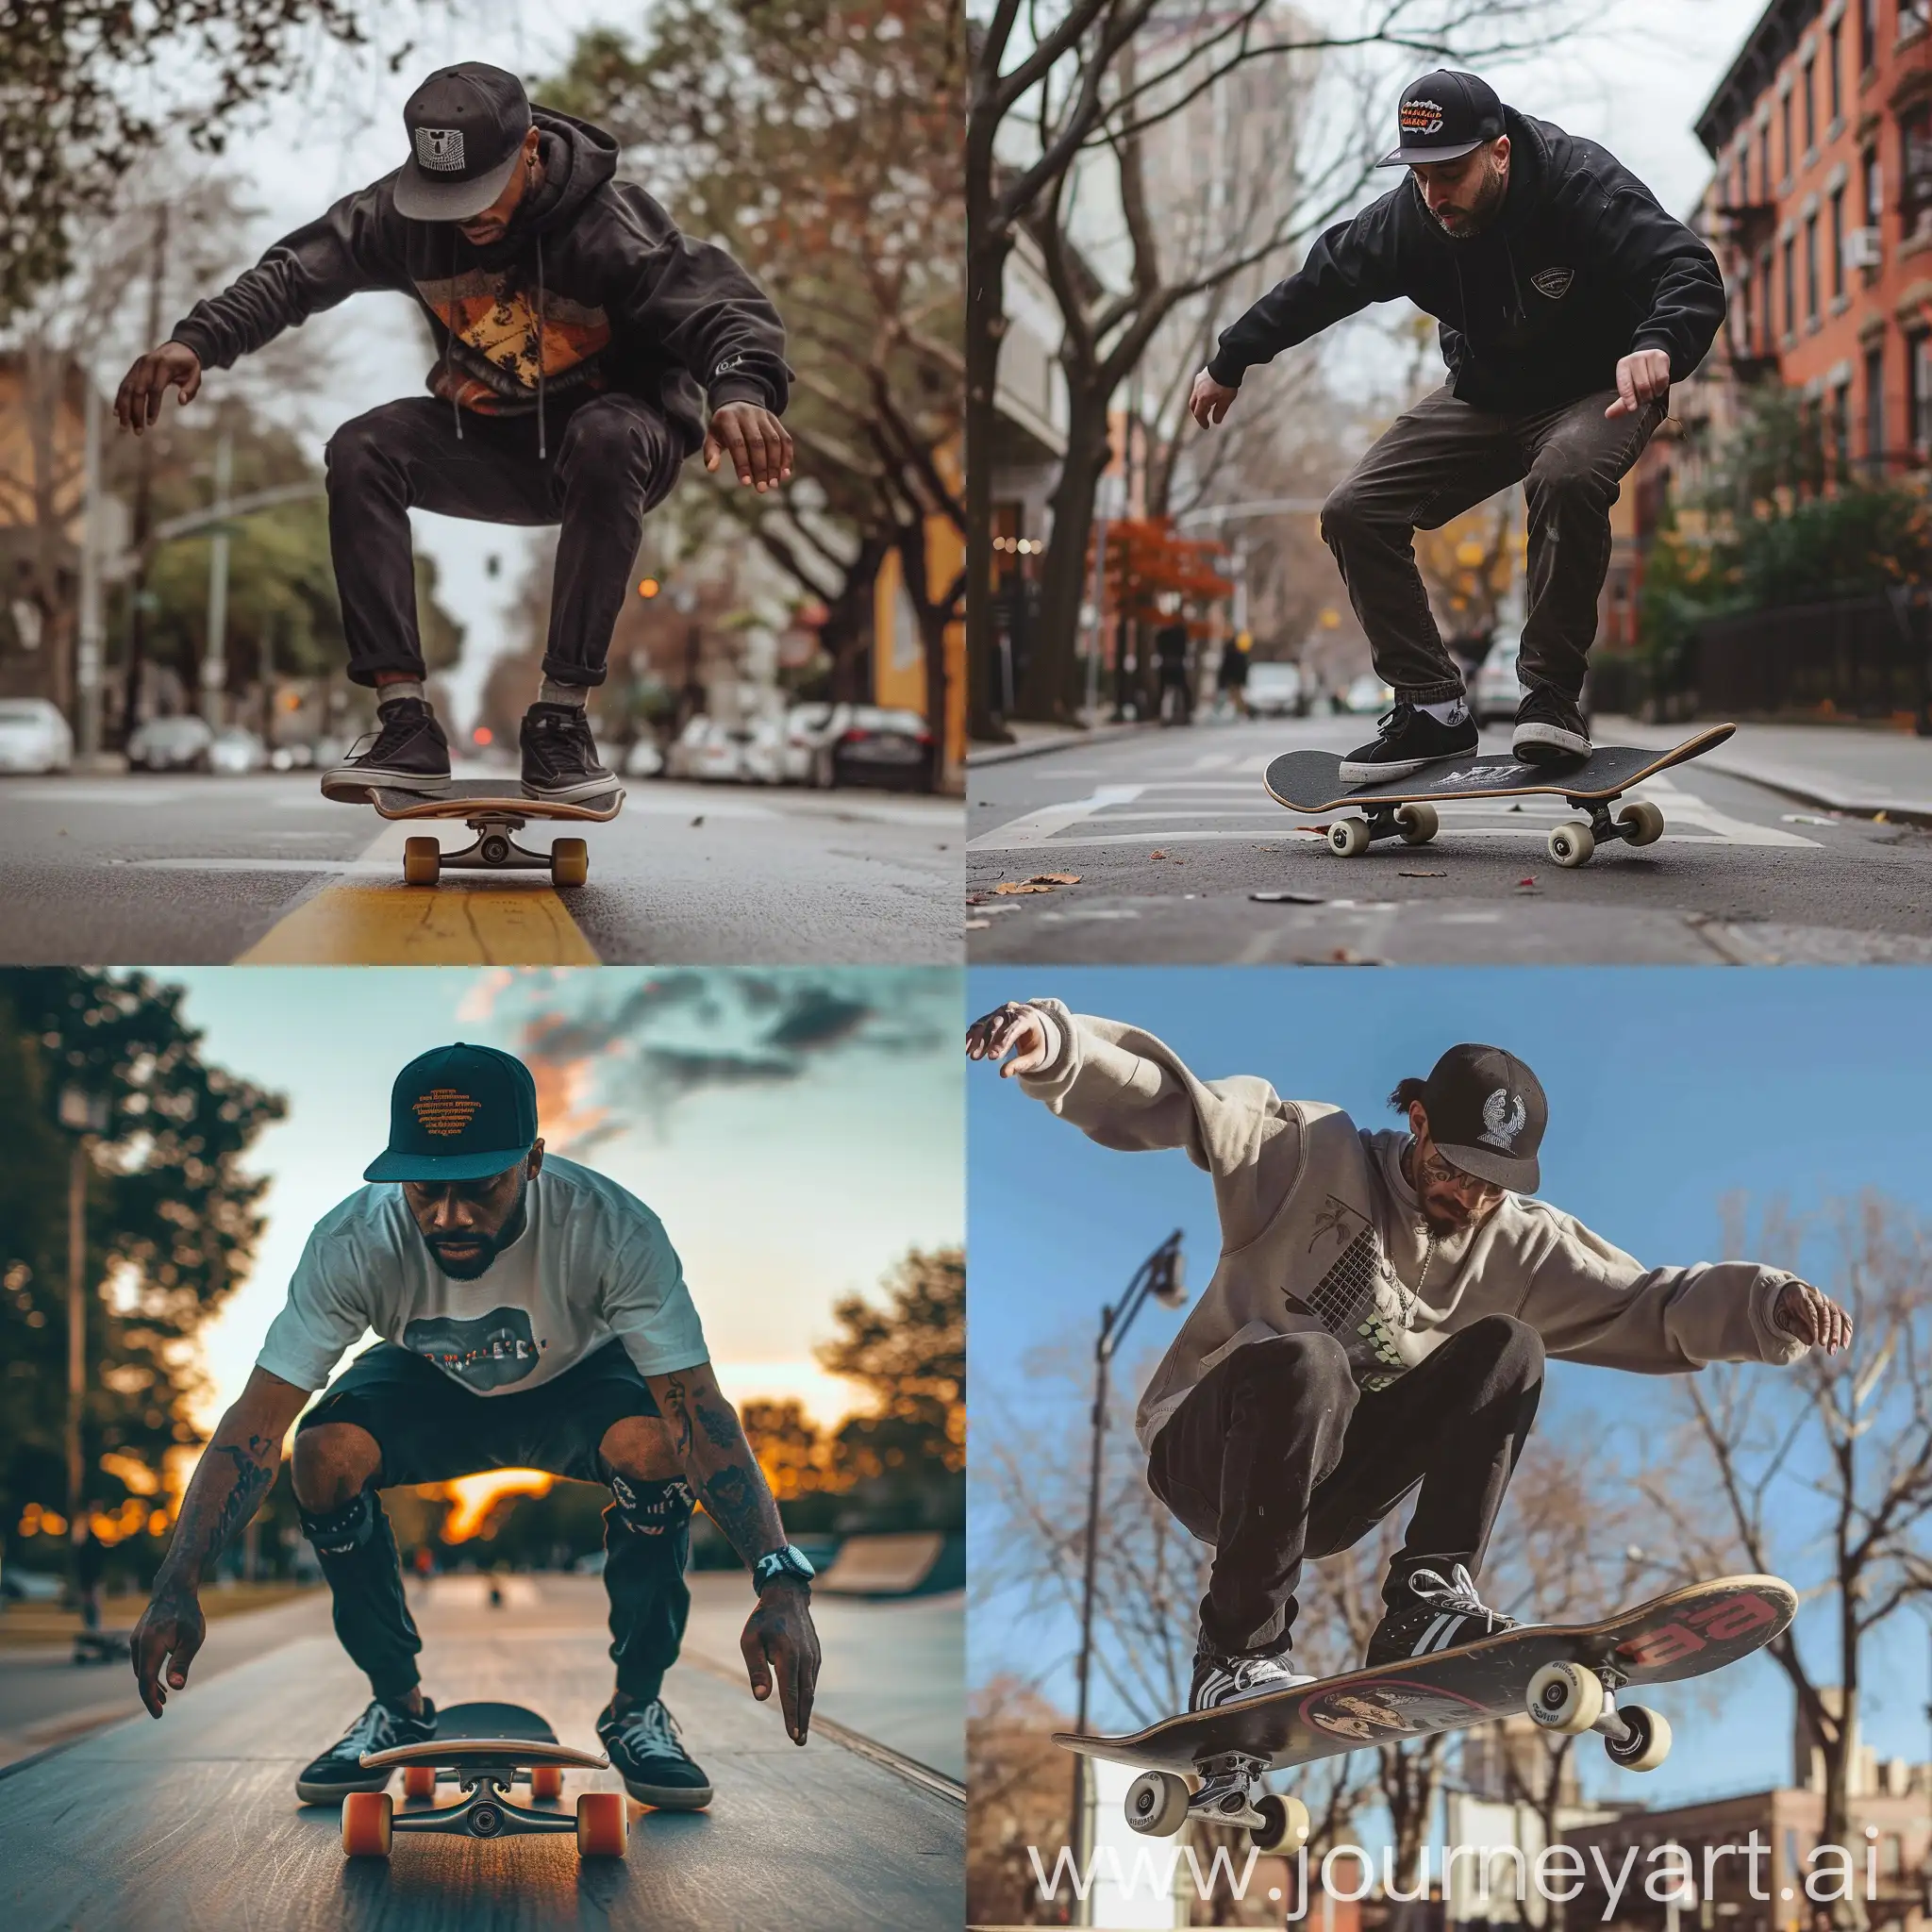 Sims-Barton-Skateboarding-in-a-Cap-Funfilled-Action-Shot